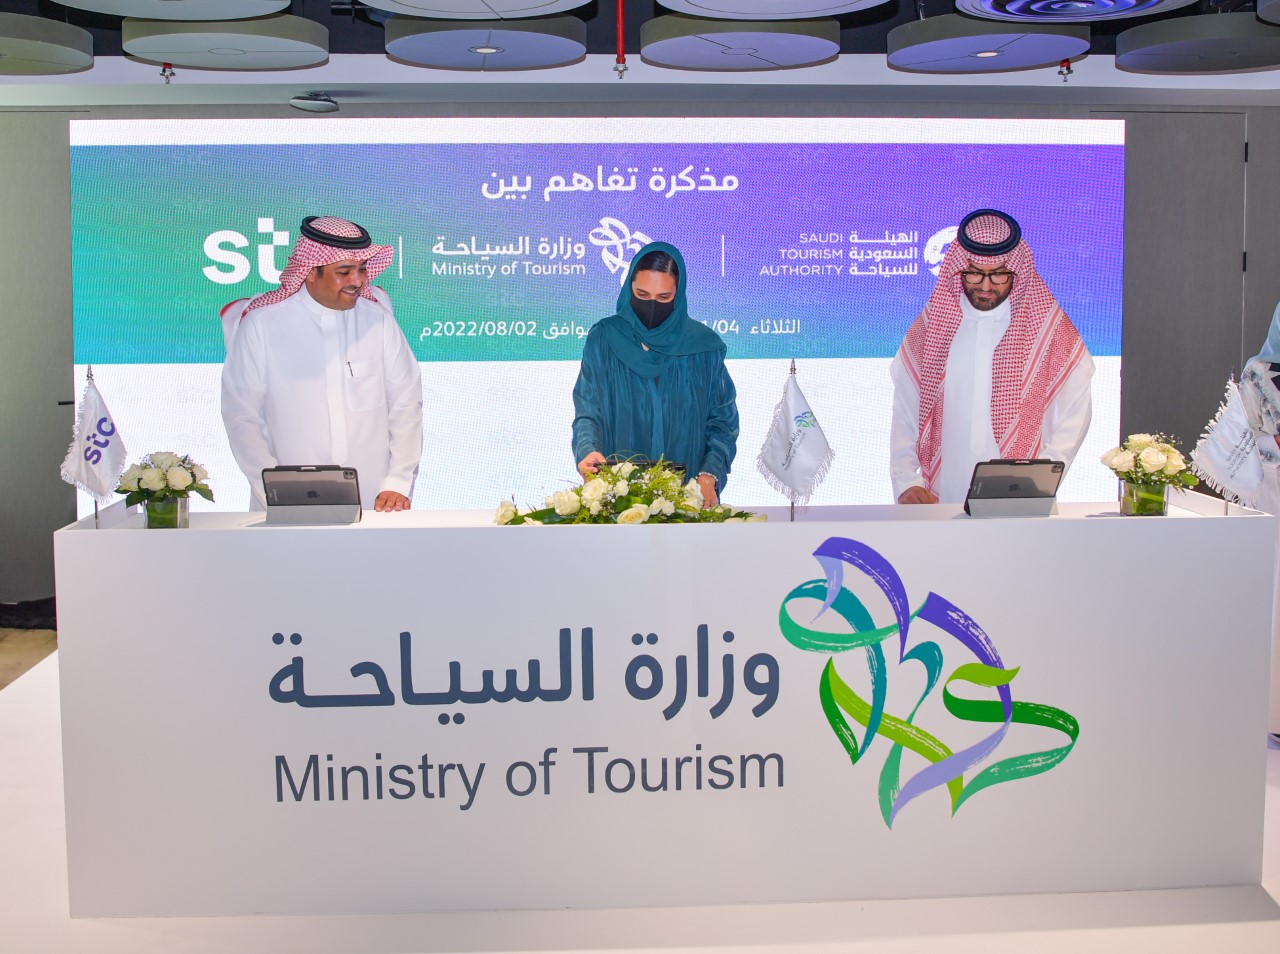 وزارة السياحة والهيئة السعودية للسياحة توقعان مذكرة تفاهم مع مجموعة STC لدعم السياحة الرقمية وتعزيز مكانة المملكة في خارطة السياحة العالمية